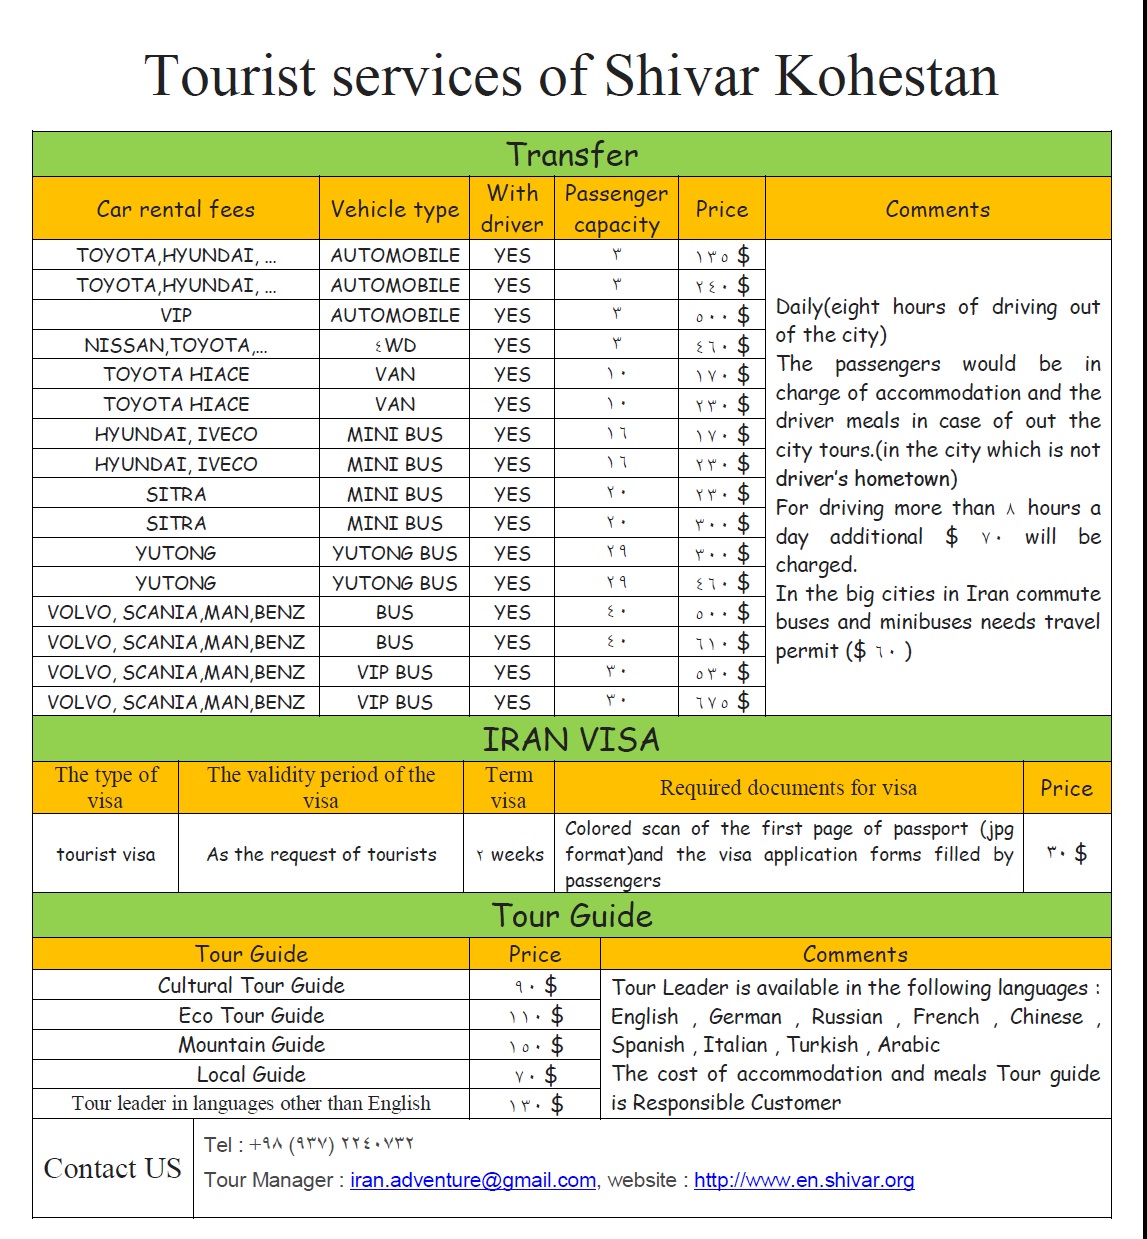 Tourist services of Shivar kohestan NGO